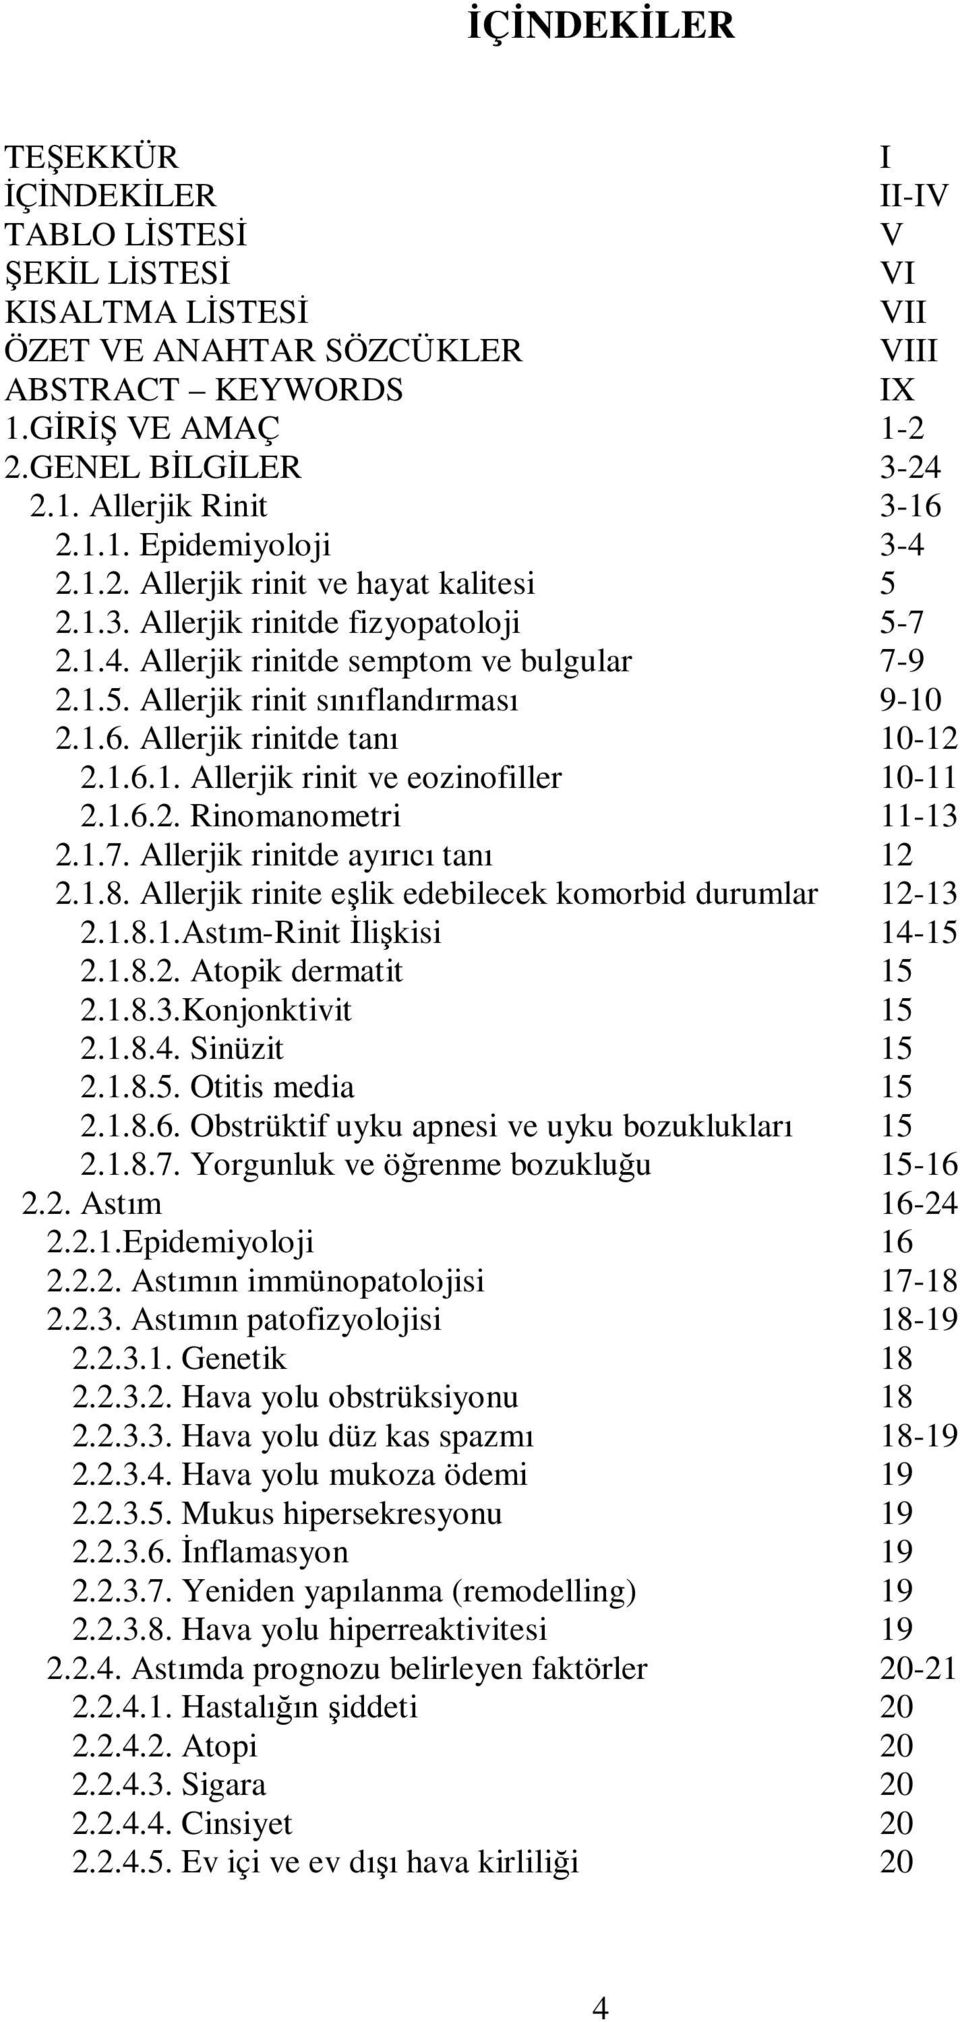 1.6. Allerjik rinitde tanı 10-12 2.1.6.1. Allerjik rinit ve eozinofiller 10-11 2.1.6.2. Rinomanometri 11-13 2.1.7. Allerjik rinitde ayırıcı tanı 12 2.1.8.